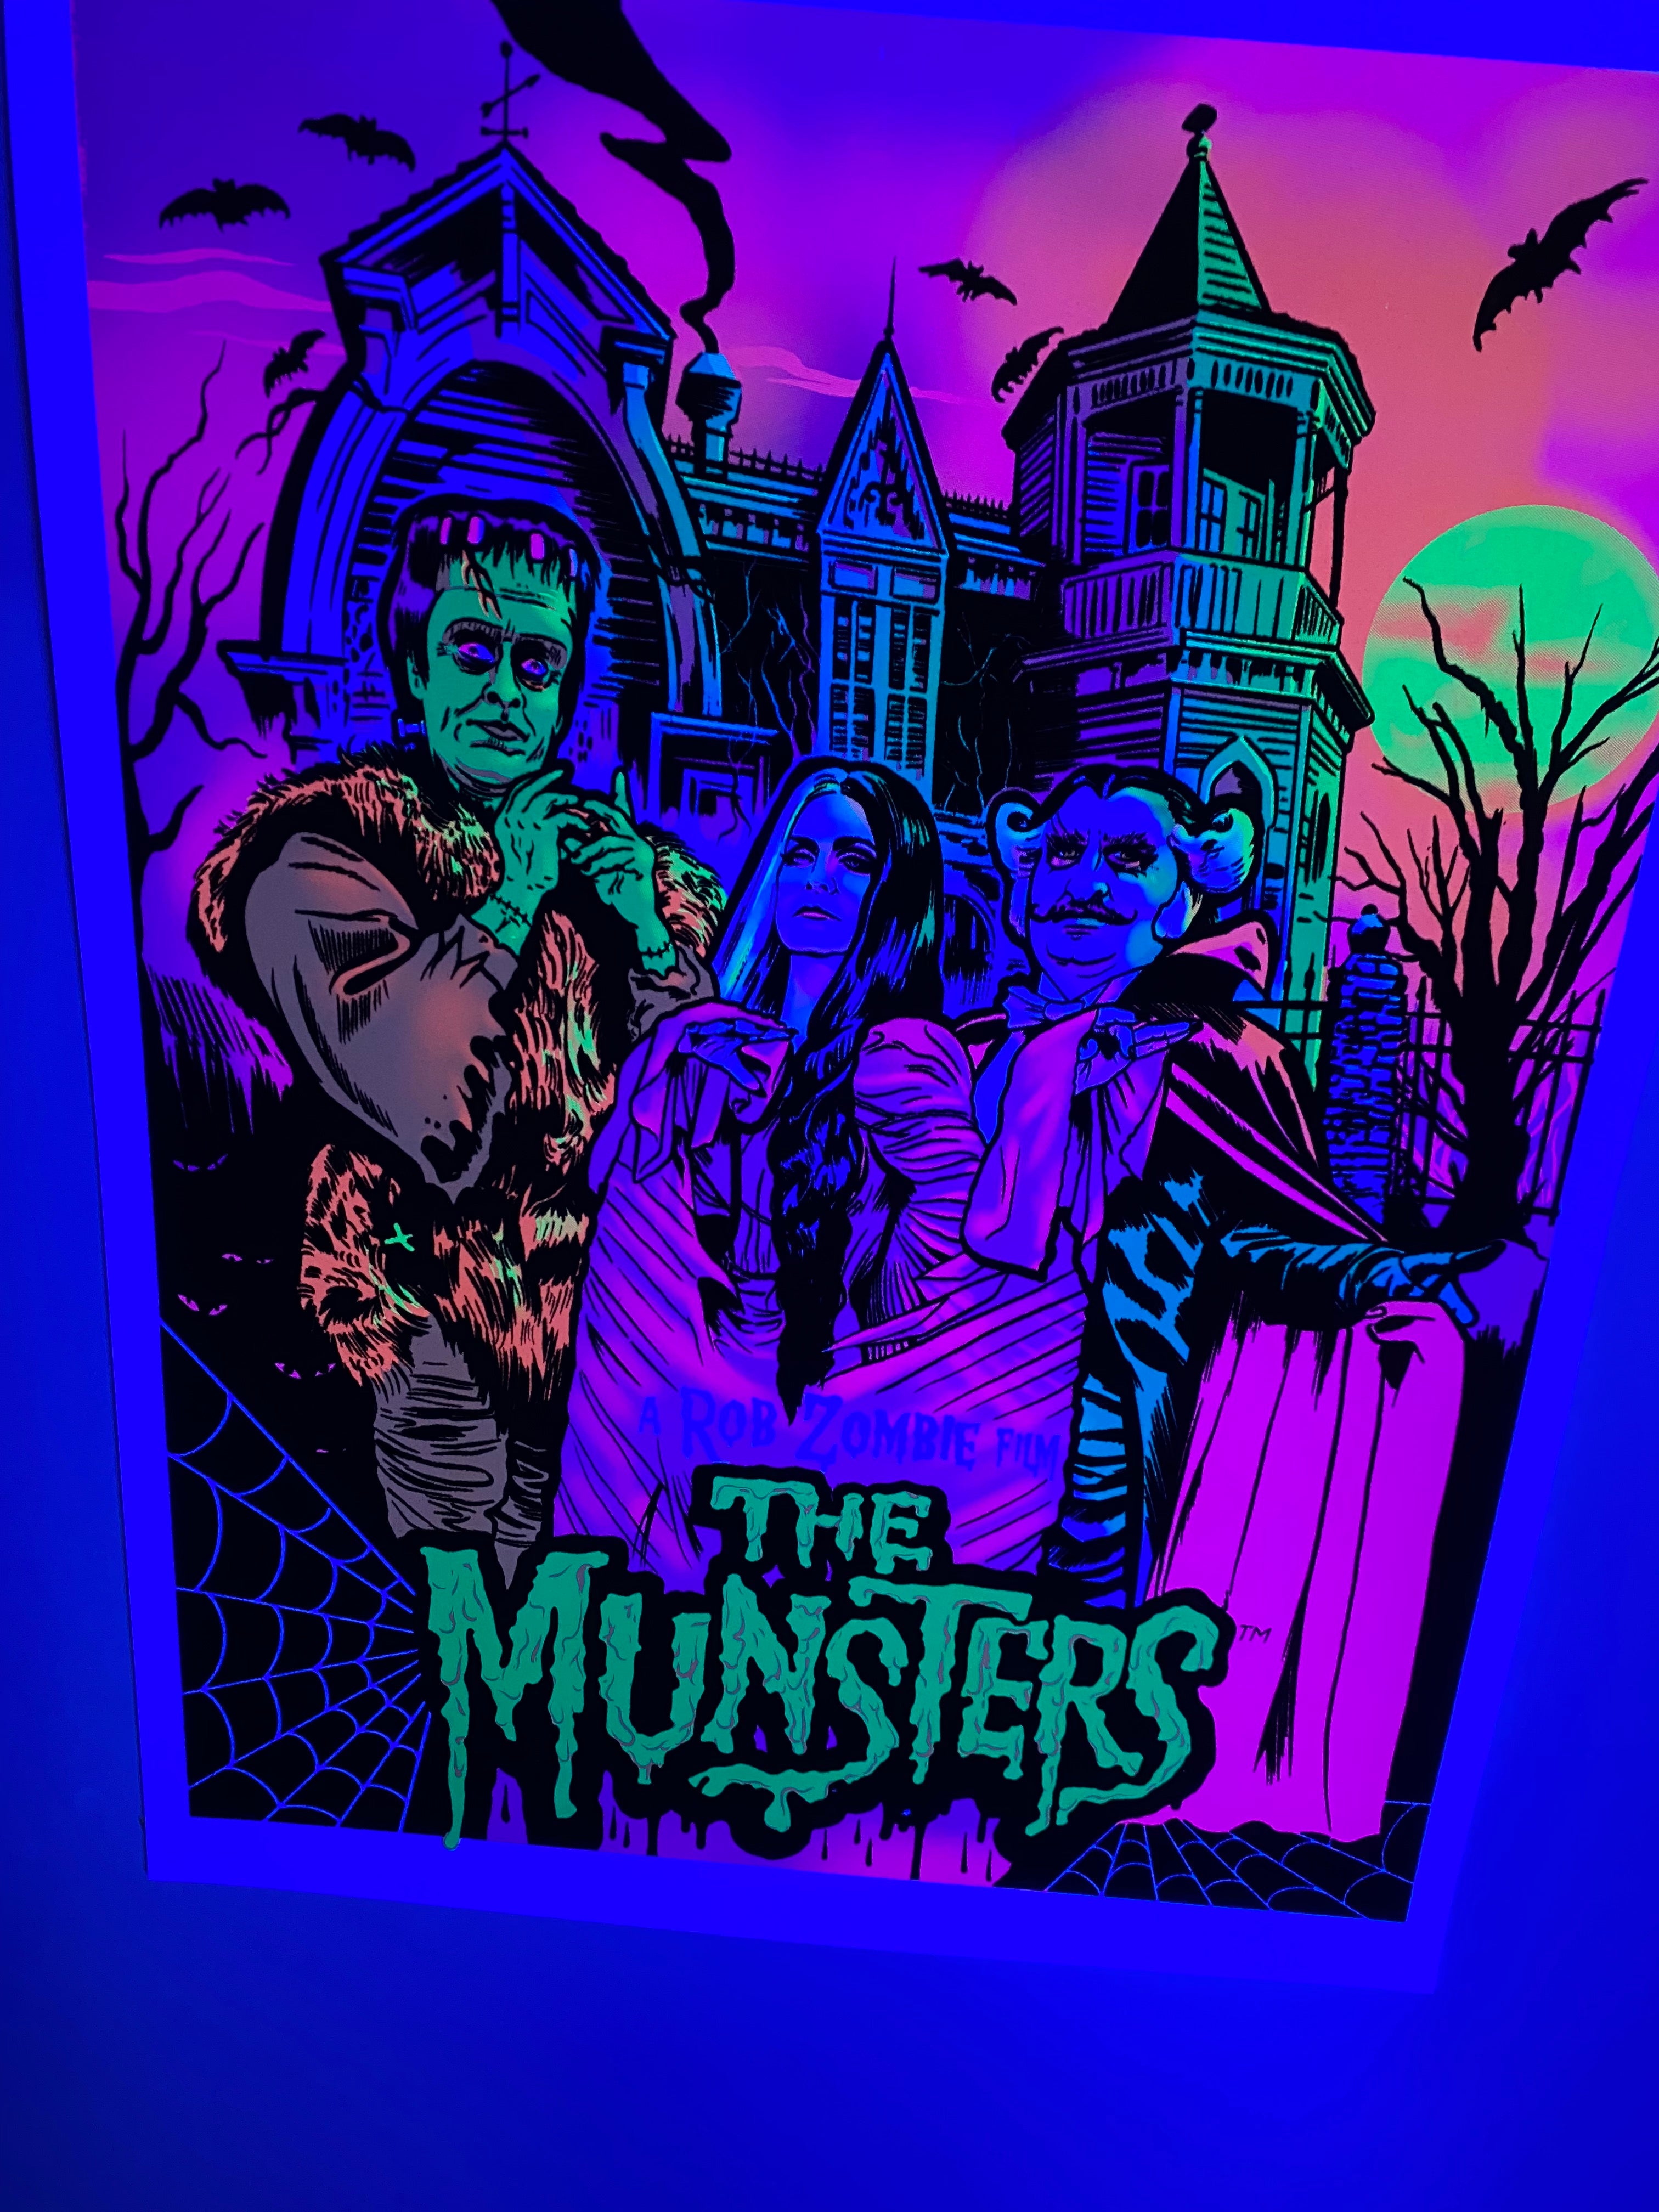 Rob Zombie's "The Munster" Blacklight Parody Print